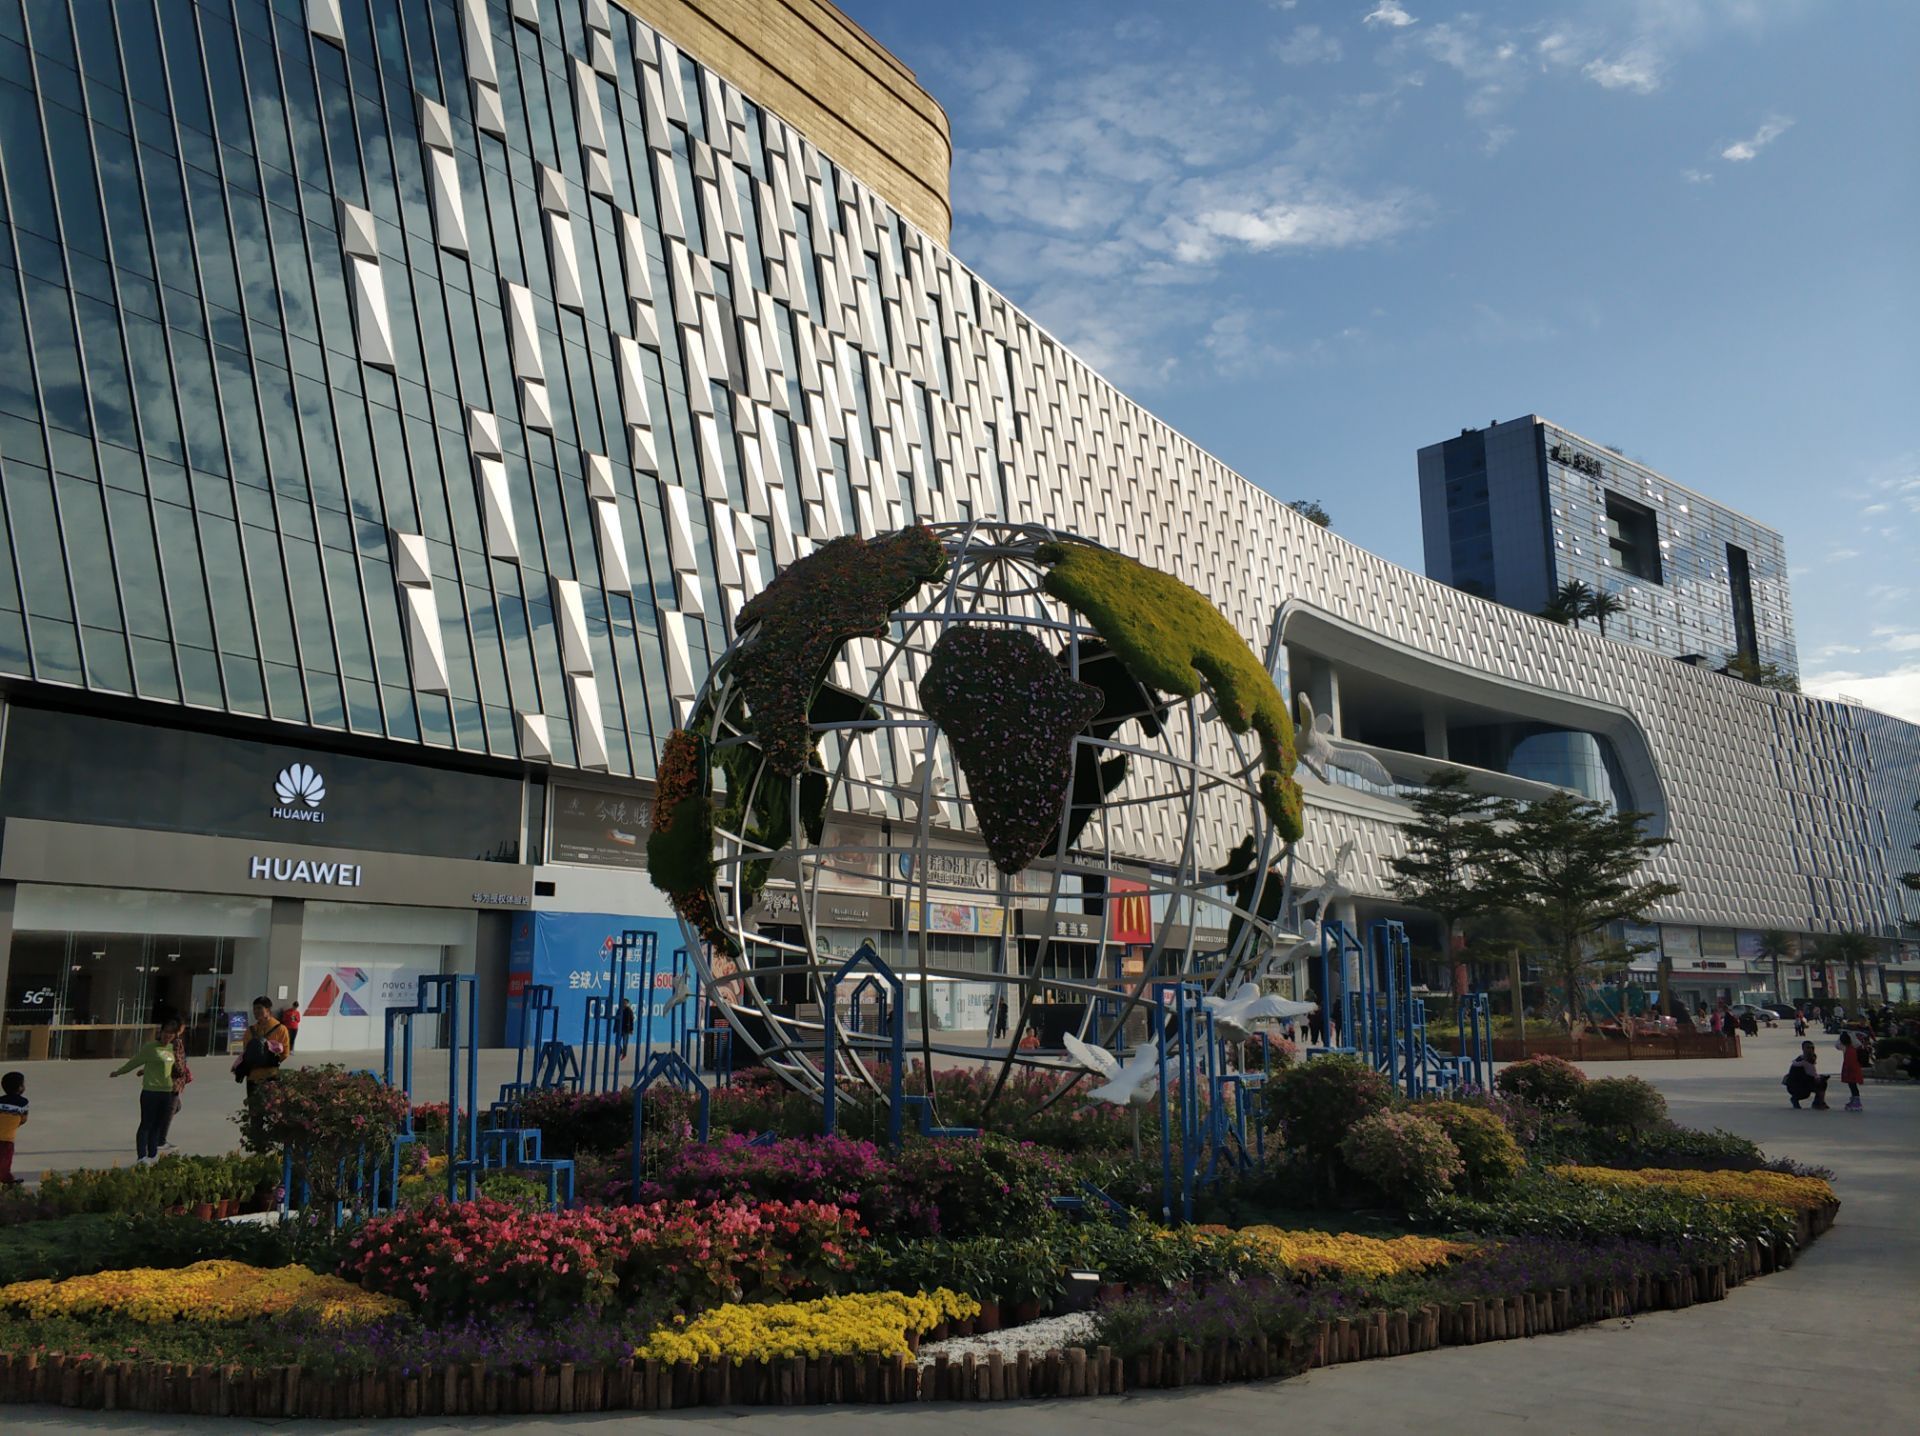 【携程攻略】广州安华汇购物,相当大的建筑物,是原